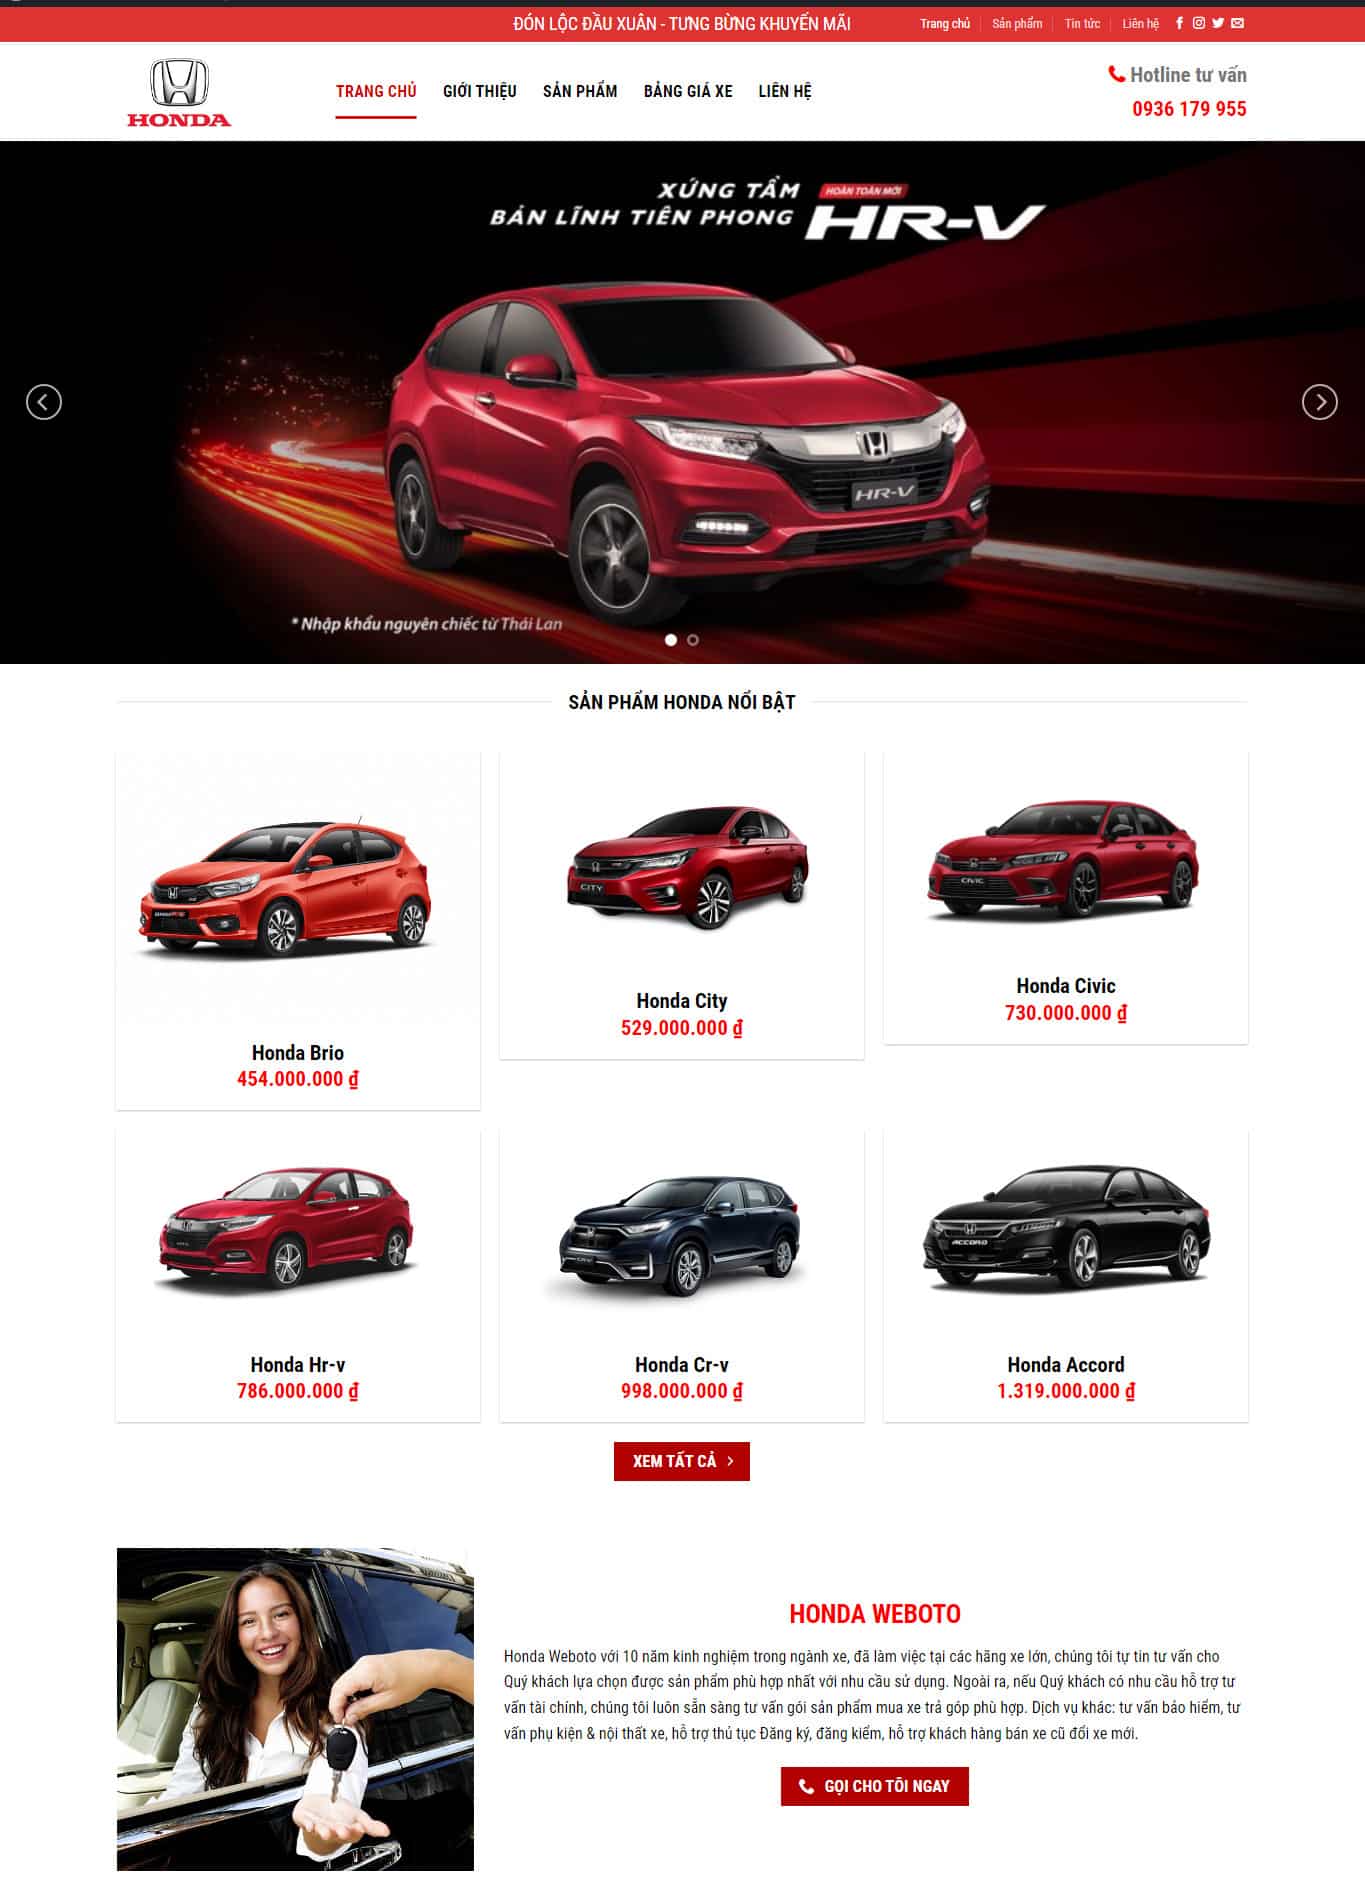 Giao diện trang chủ website bán xe ô tô Honda